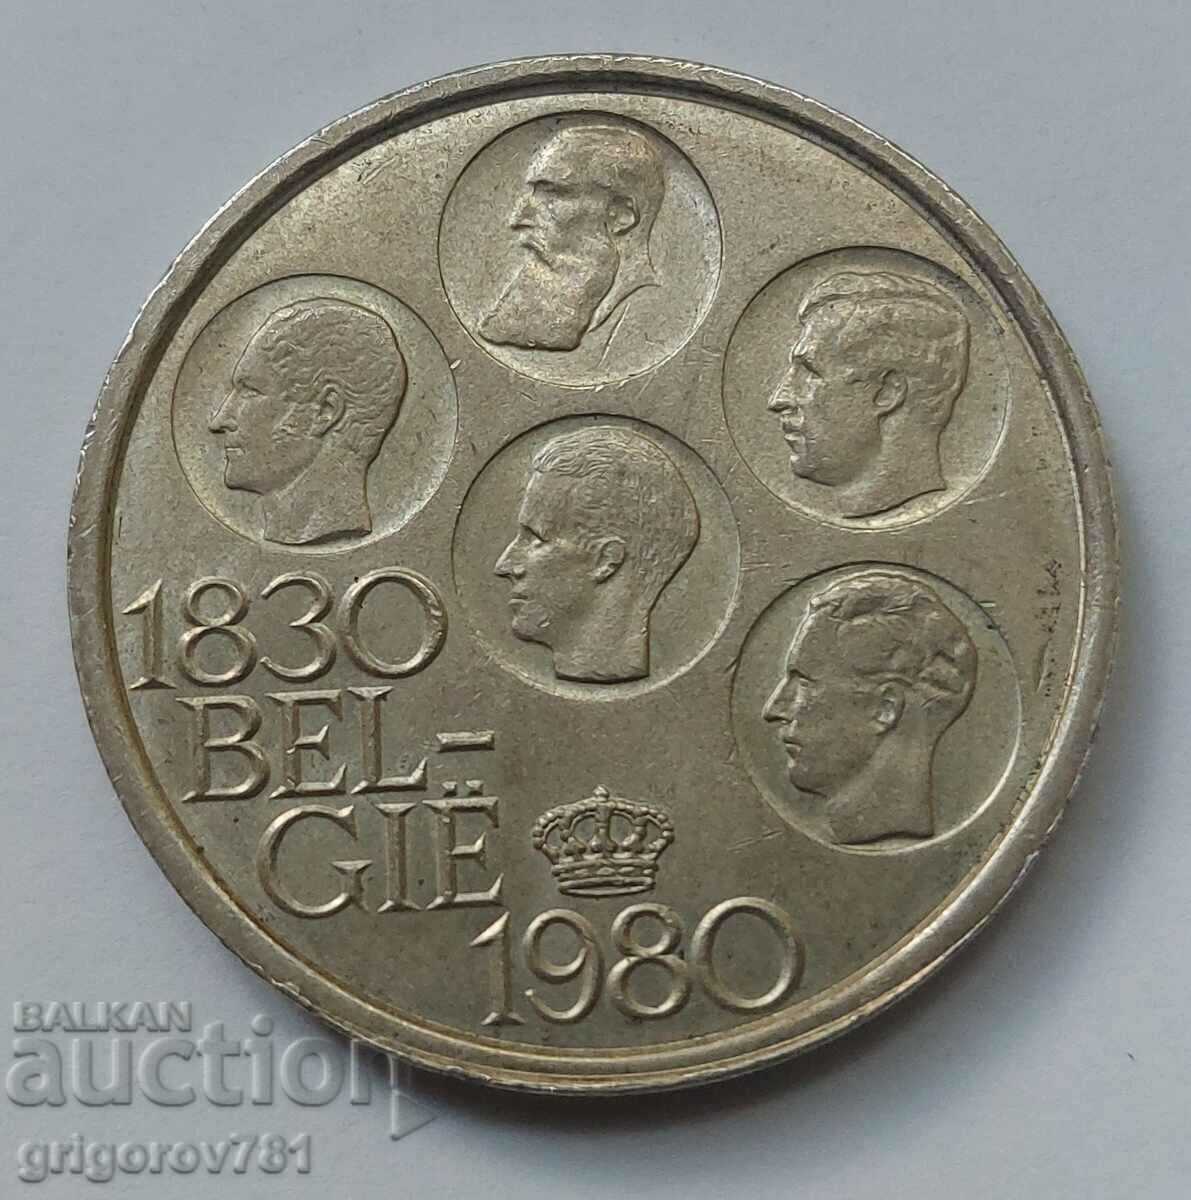 Ασημένιο 500 φράγκα Βέλγιο 1980 - ασημένιο νόμισμα